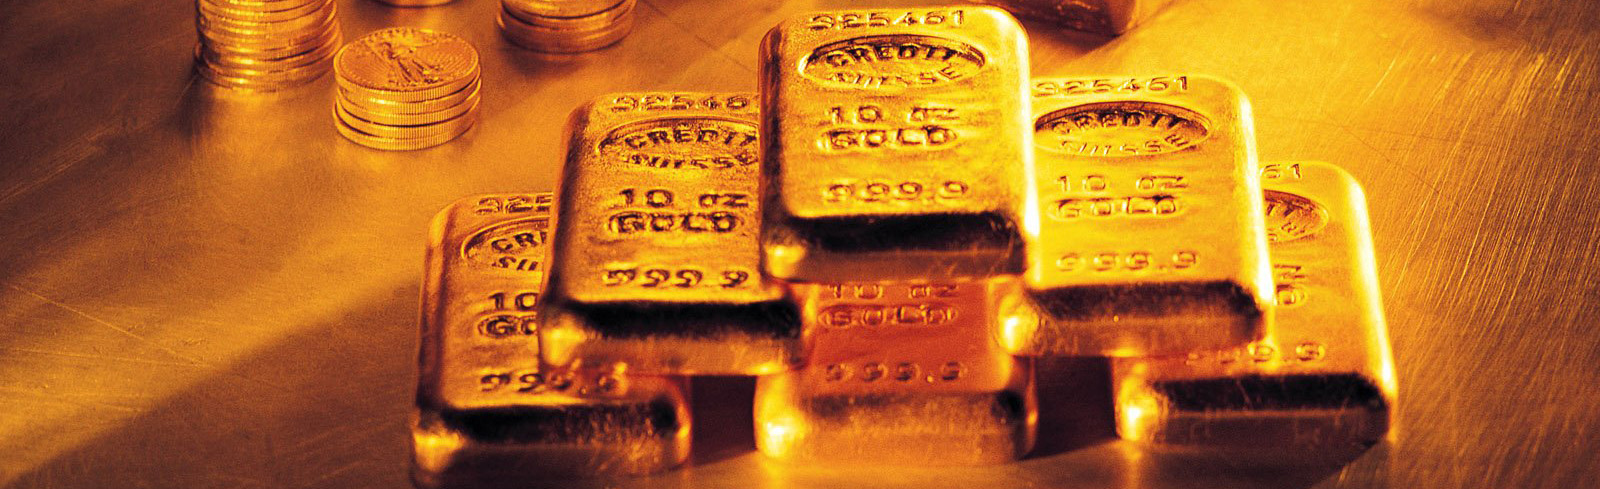 چکش دلار بر فلز زرد